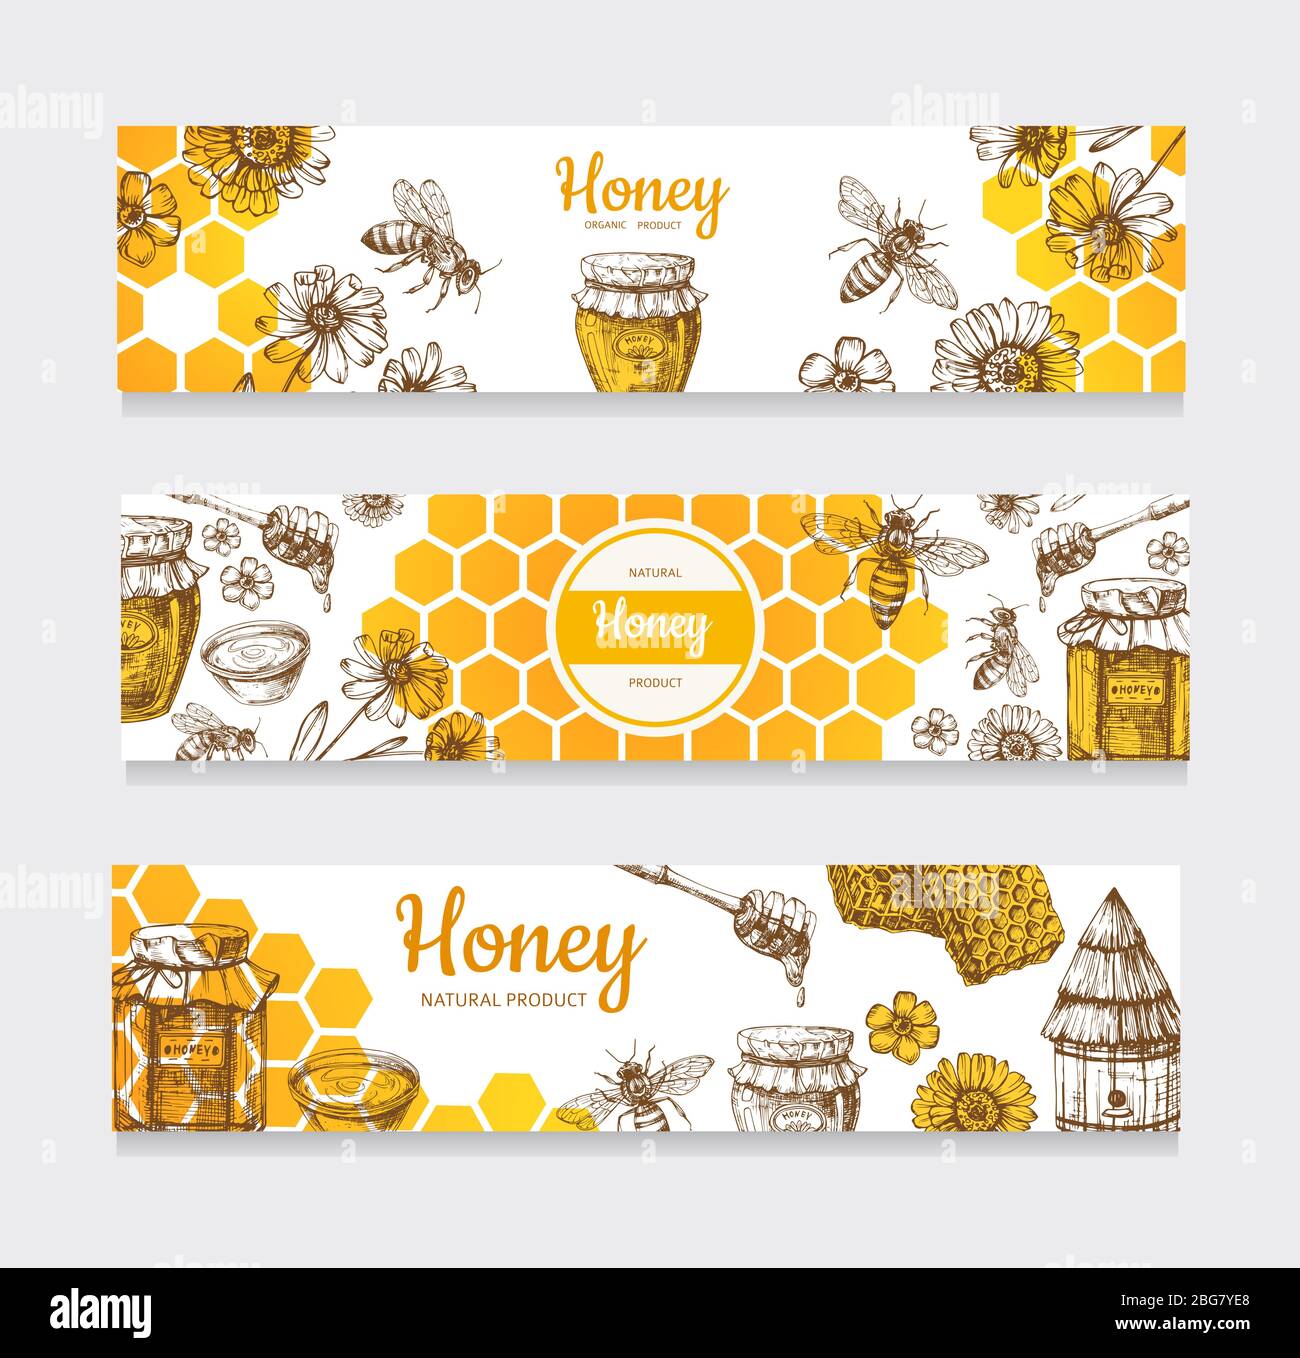 Honey Banner. Vintage Hand gezeichnete Bienen und Honigblüten, Waben und Bienenstock Vektor-Etiketten. Illustration von gesunden Lebensmitteln, natürliche süße Hone Web Poster Illustration Stock Vektor